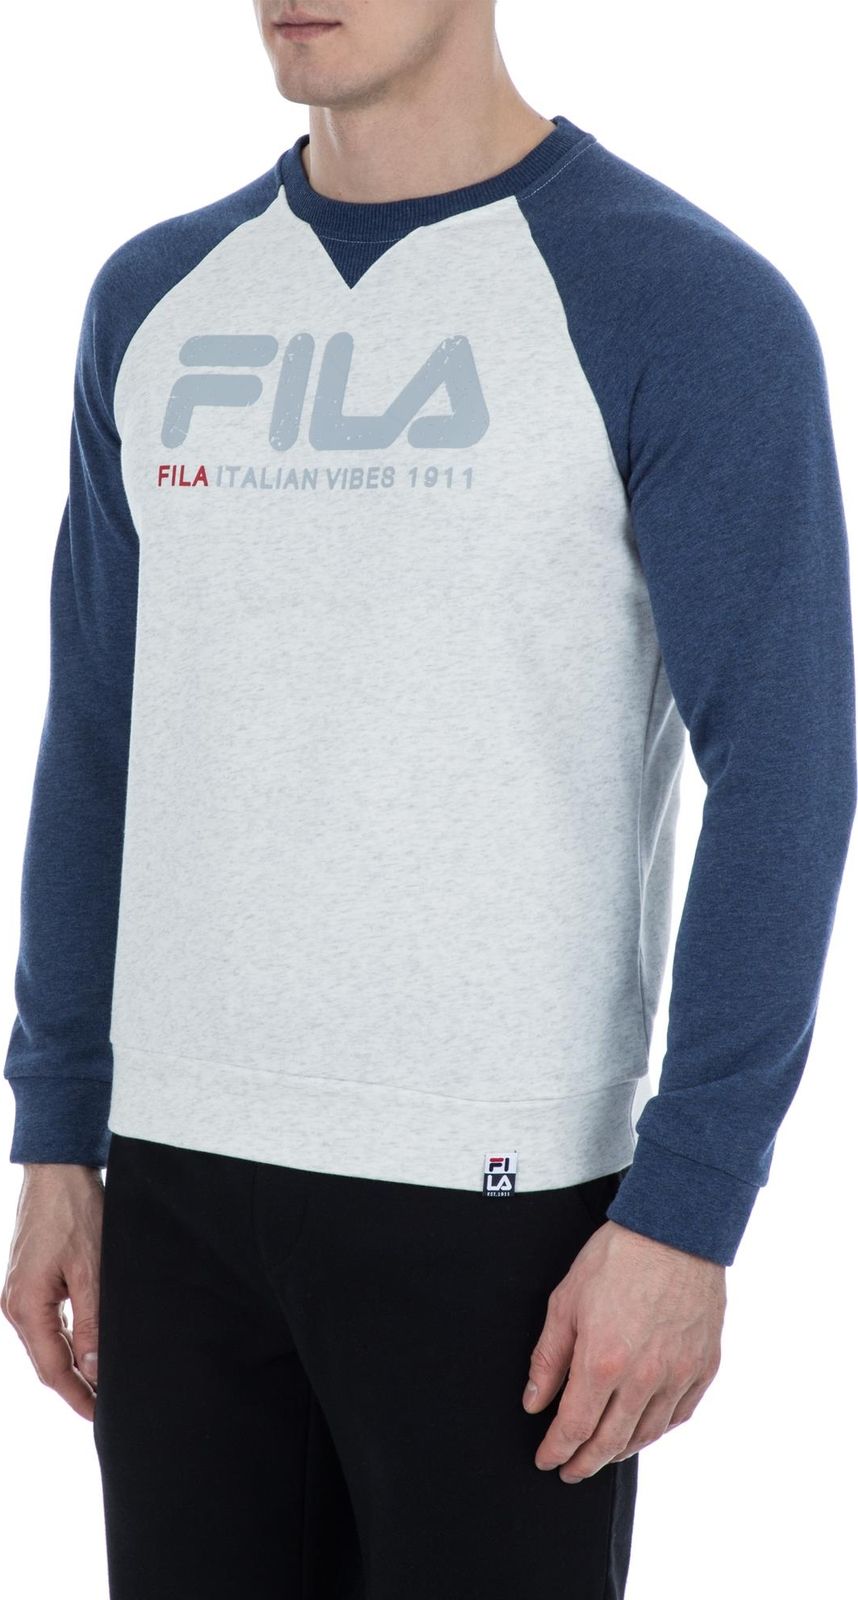   Fila Men's jumper, : -. S19AFLJUM03-1A.  L (50)